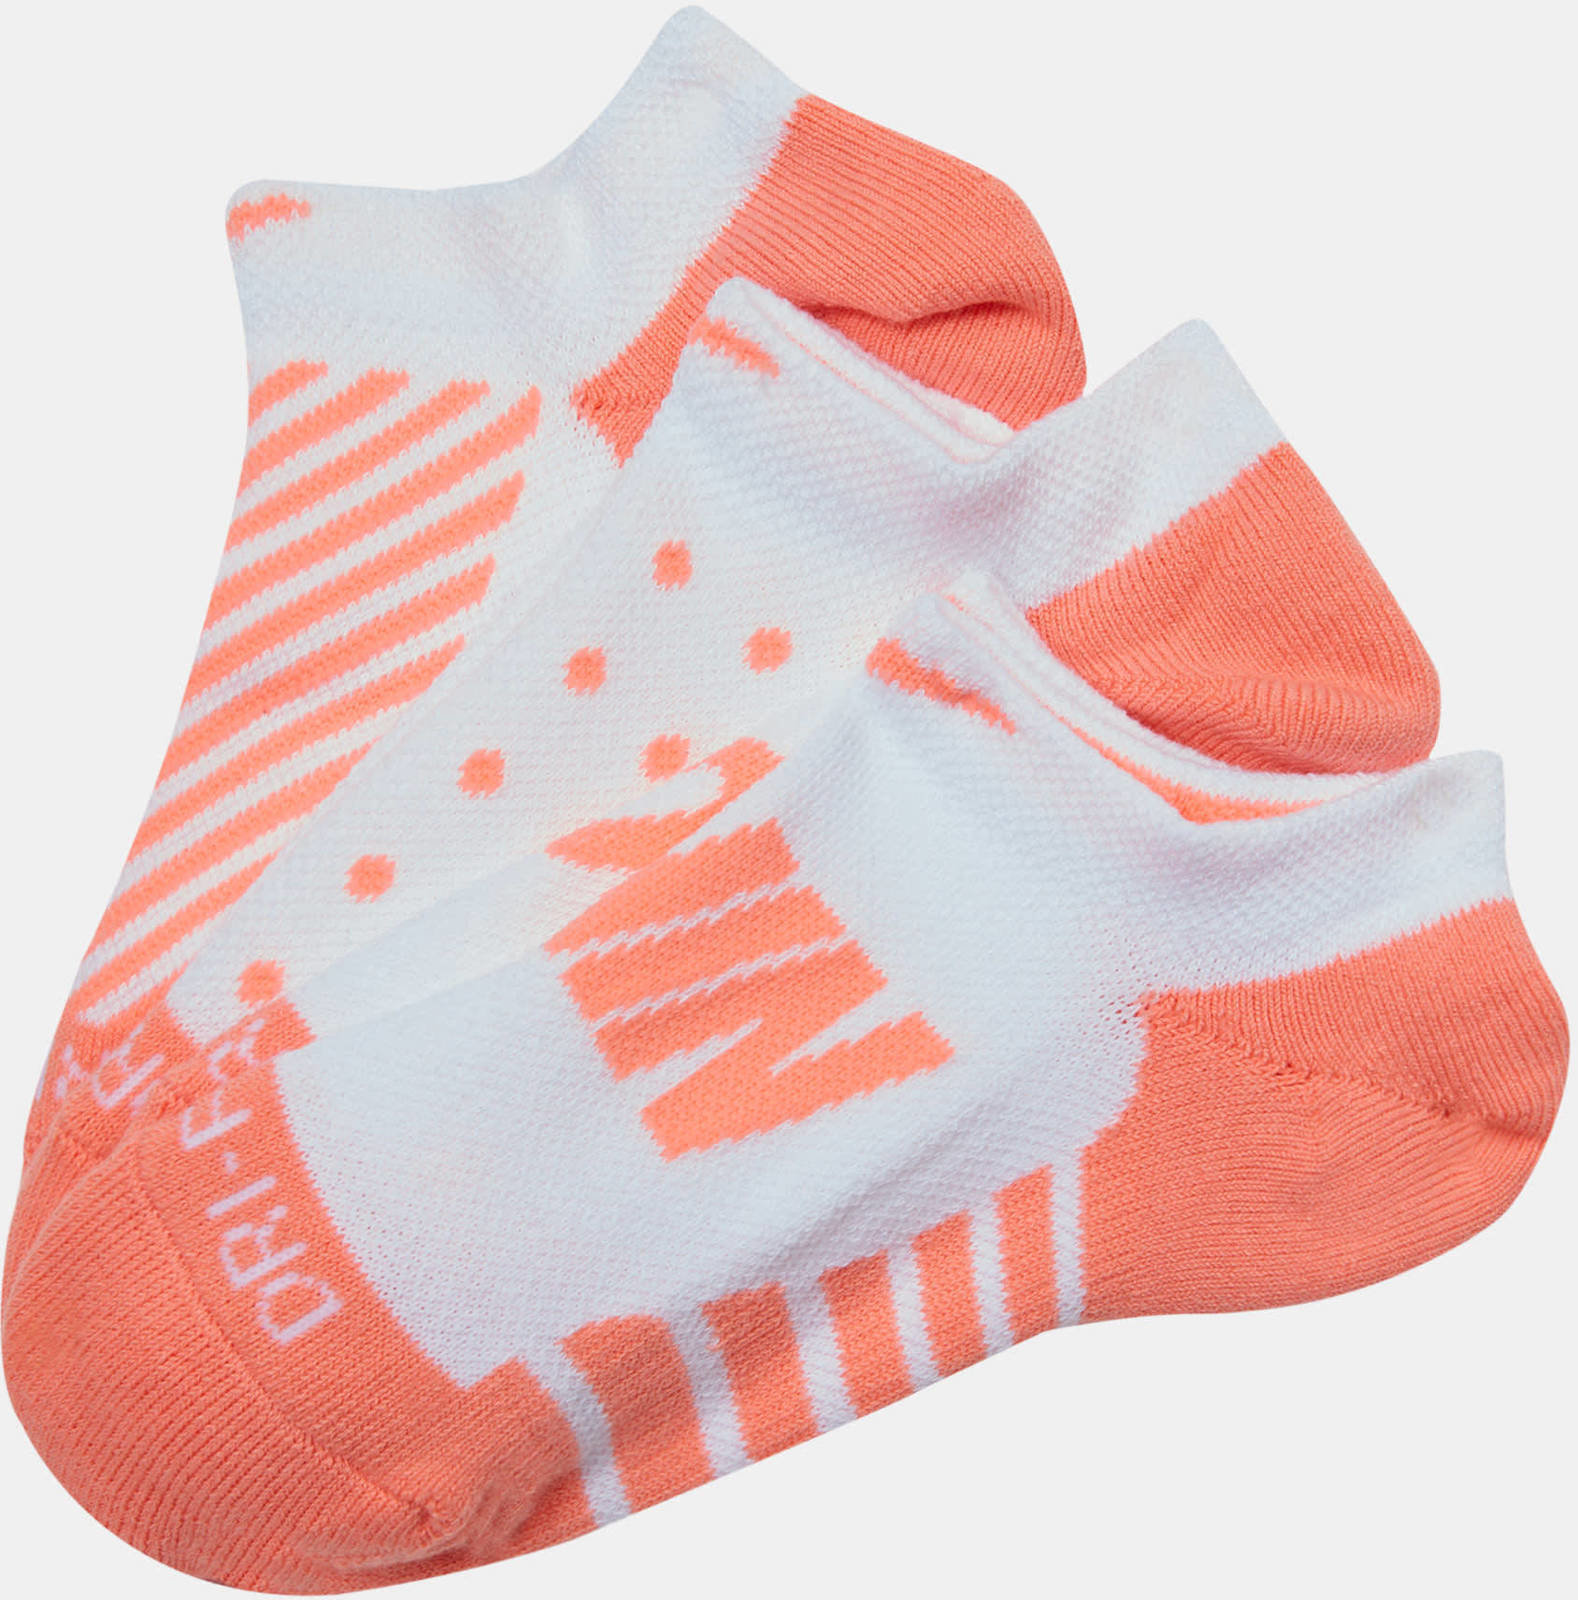 Socken Nike Womens Golf Cush Ns 3Pair White/Lt Atomic Pink/Lt Atomic Pink S